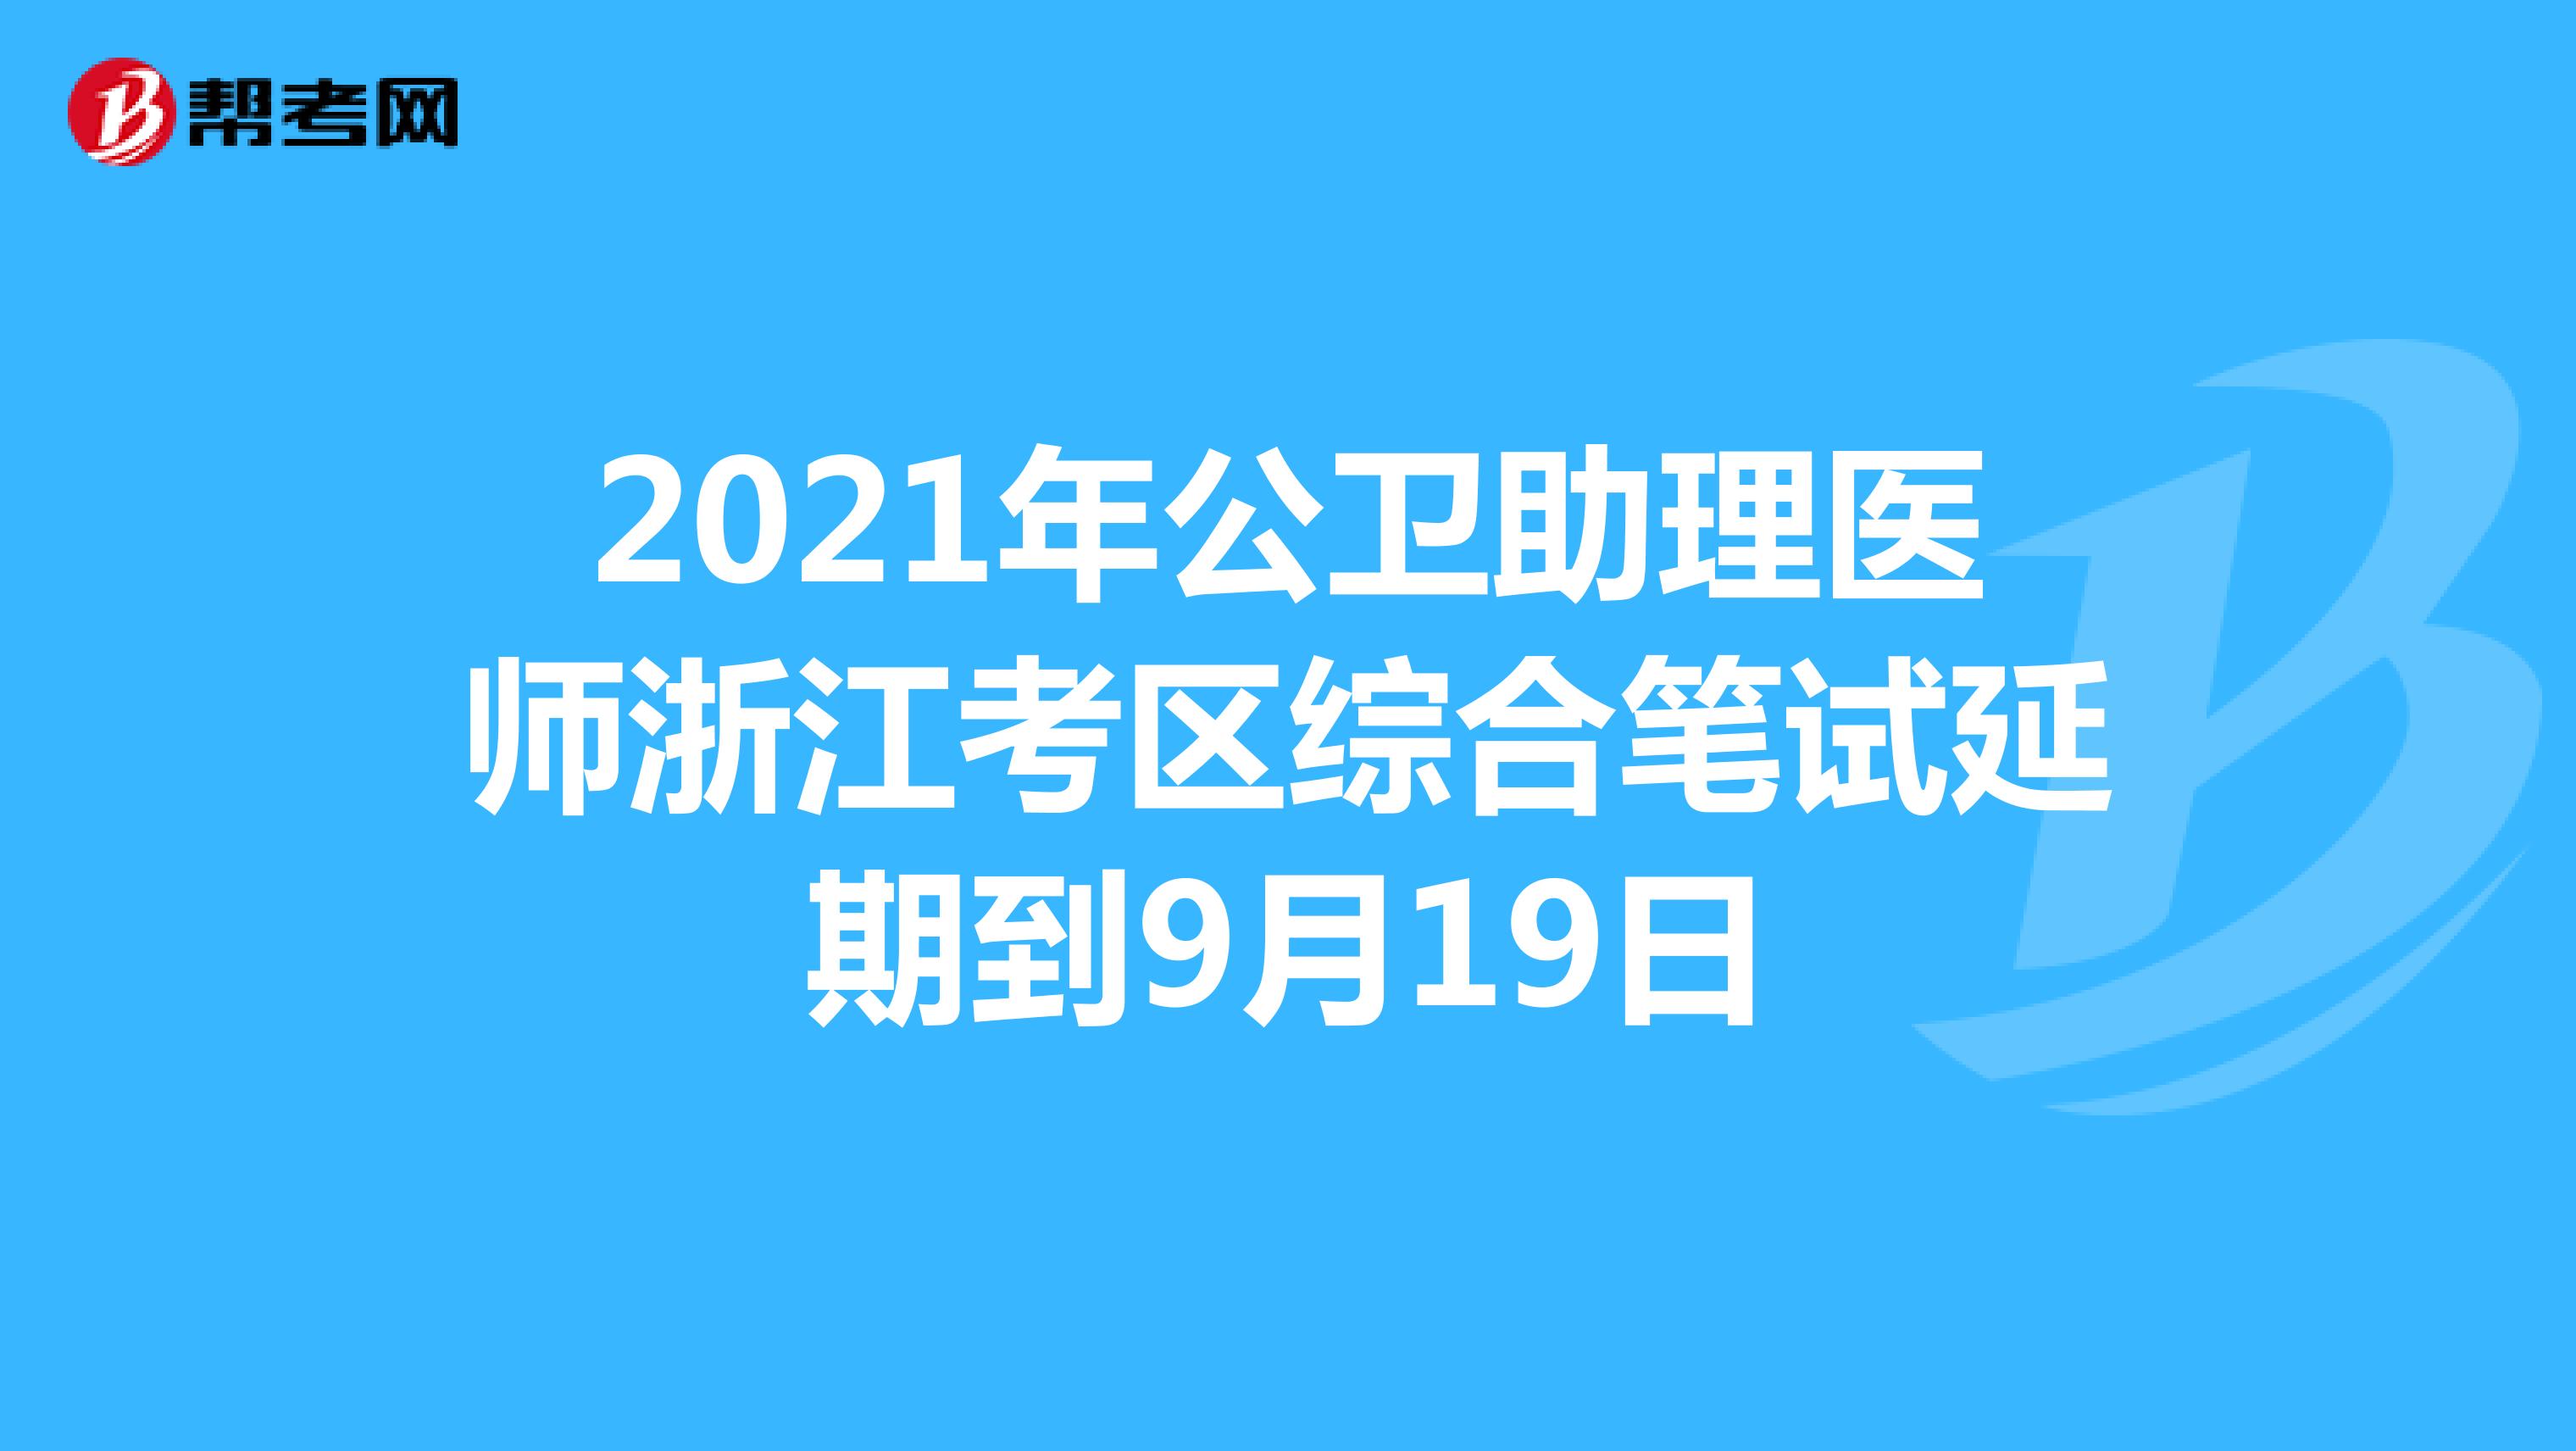 2021年公卫助理医师浙江考区综合笔试延期到9月19日